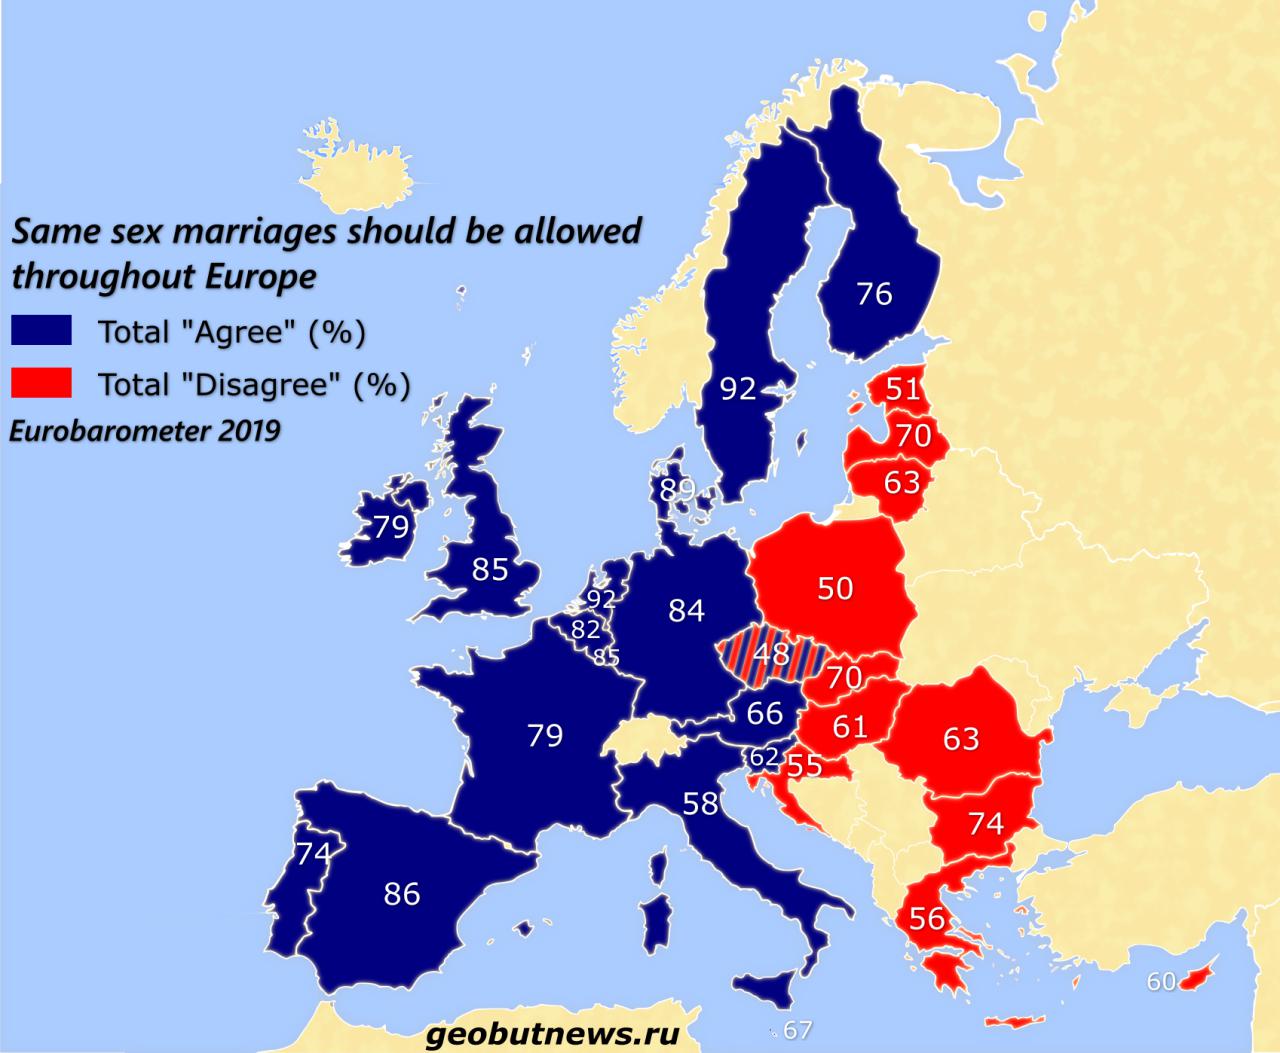 Poparcie dla wprowadzenia małżeństw jednopłciowych w poszczególnych krajach UE, 2019